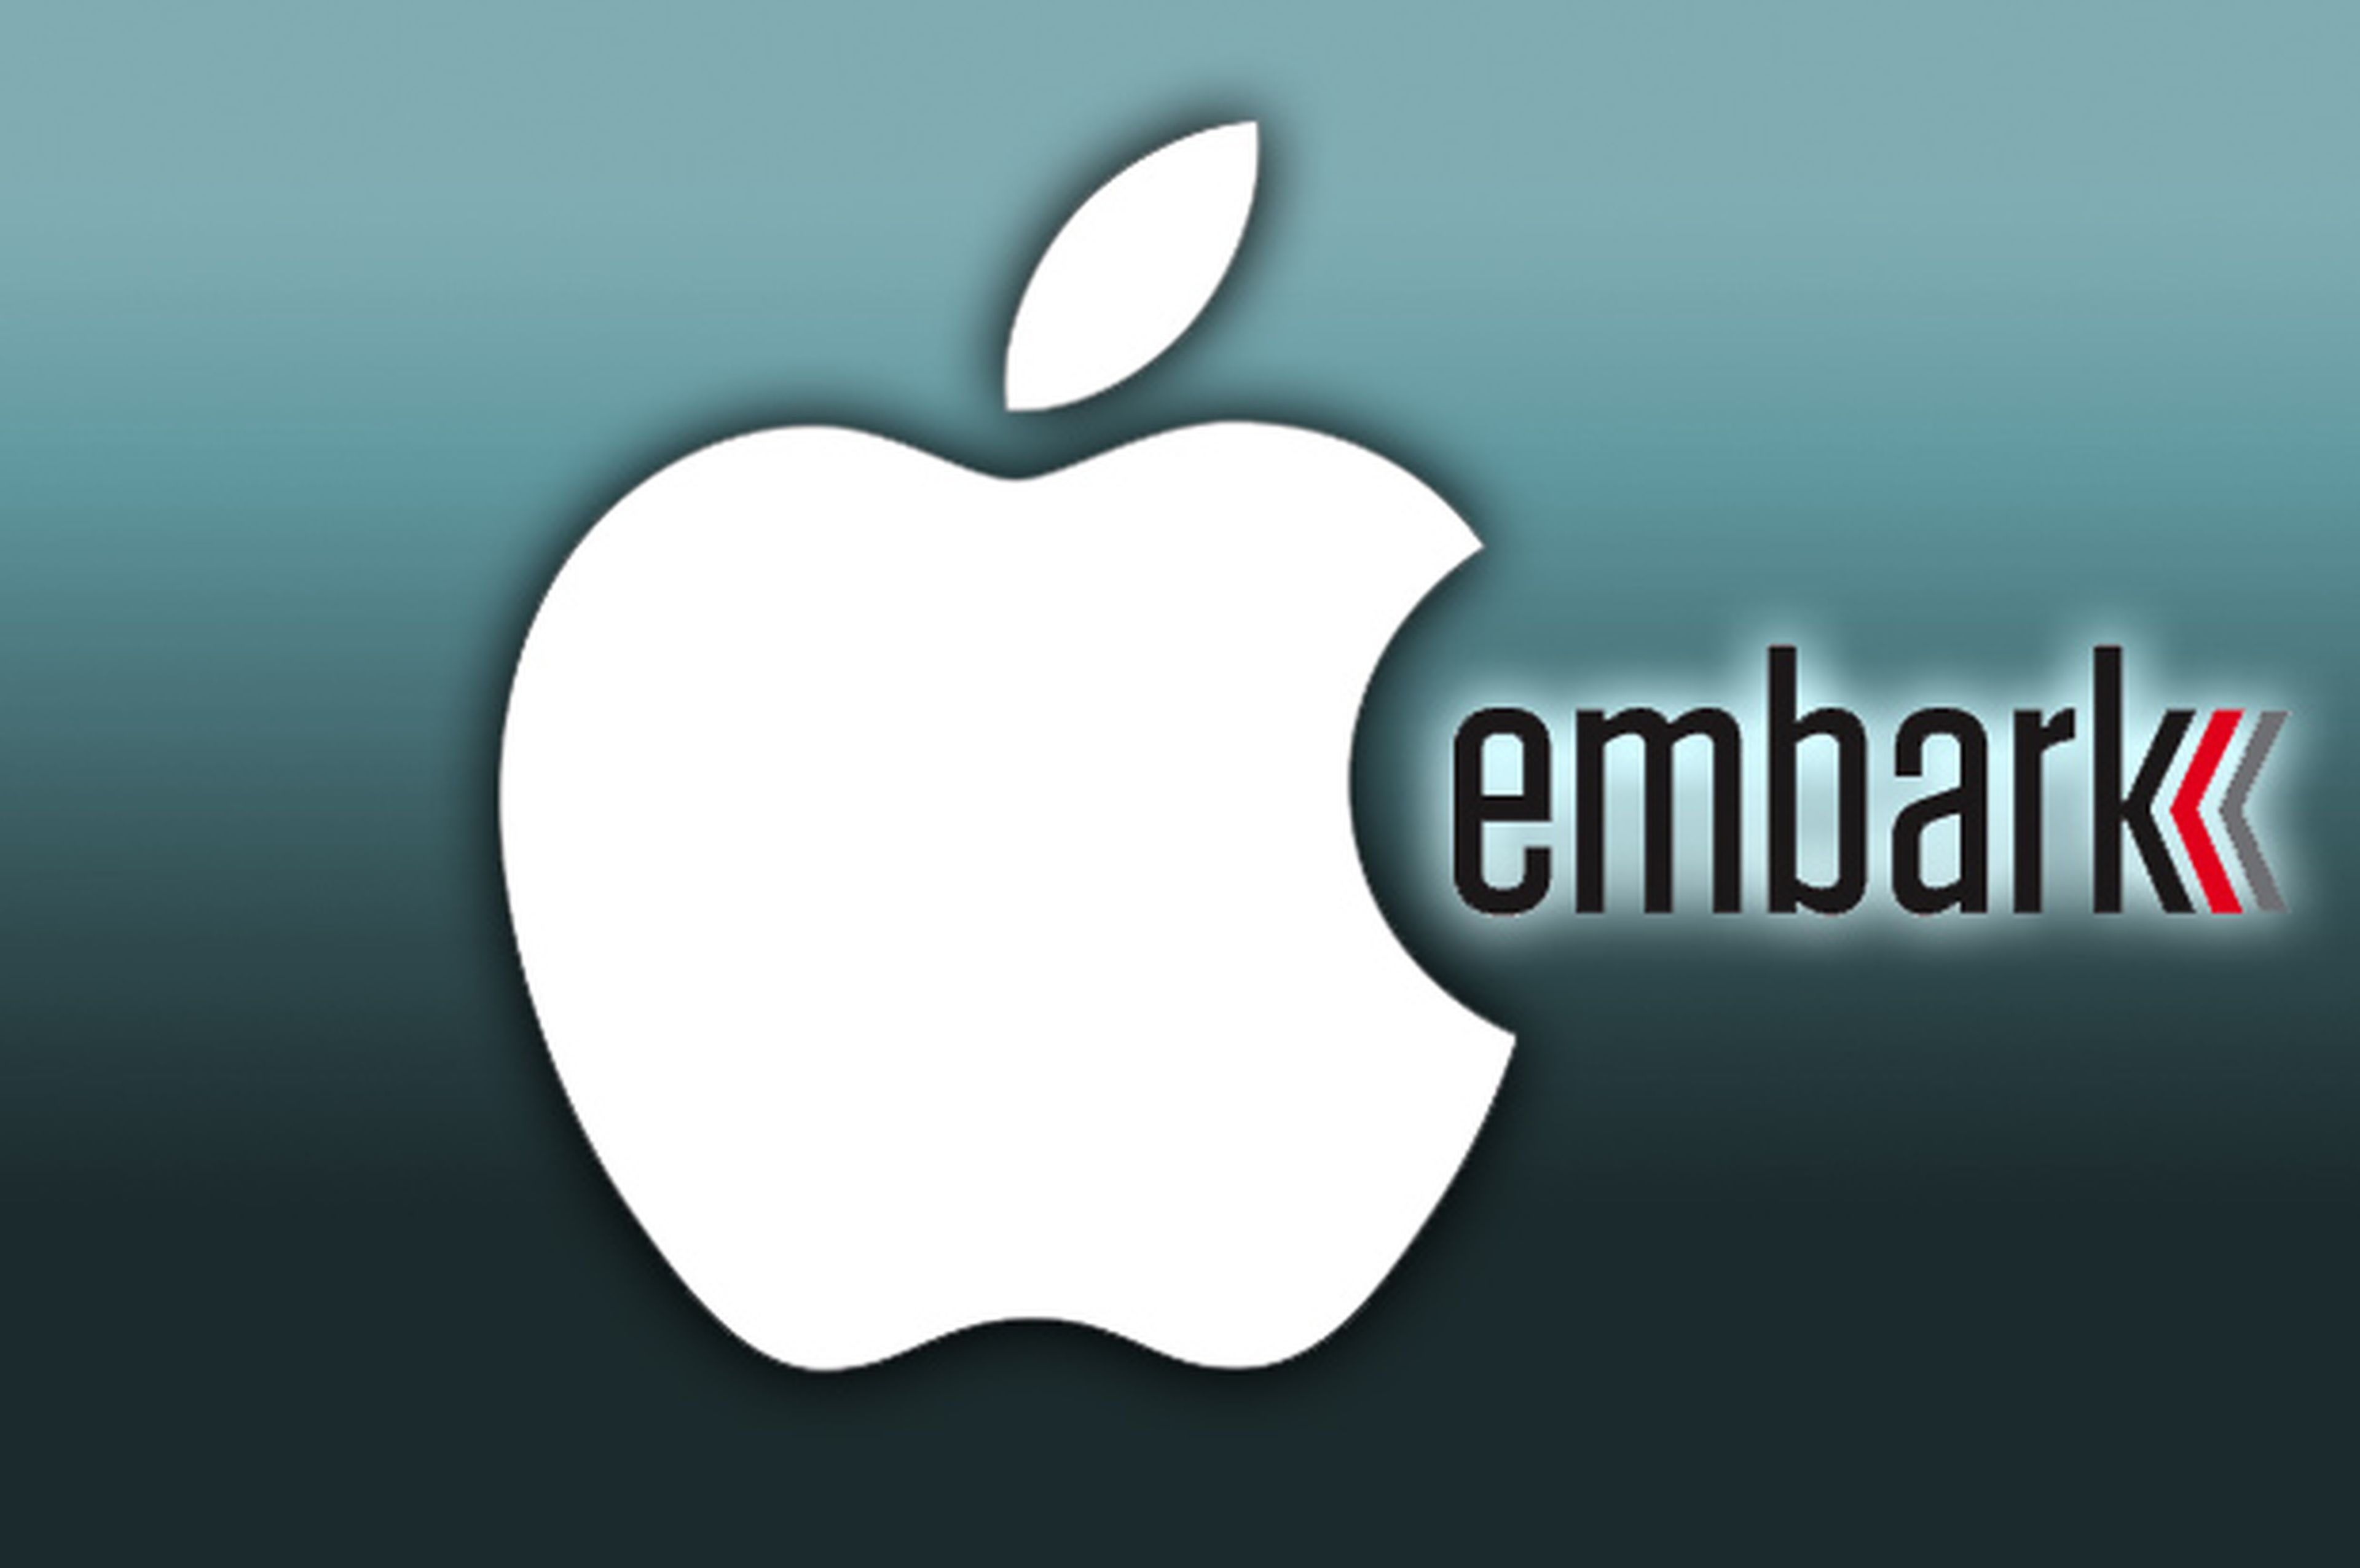 Apple compra Embark, otra compañía para mejorar sus mapas